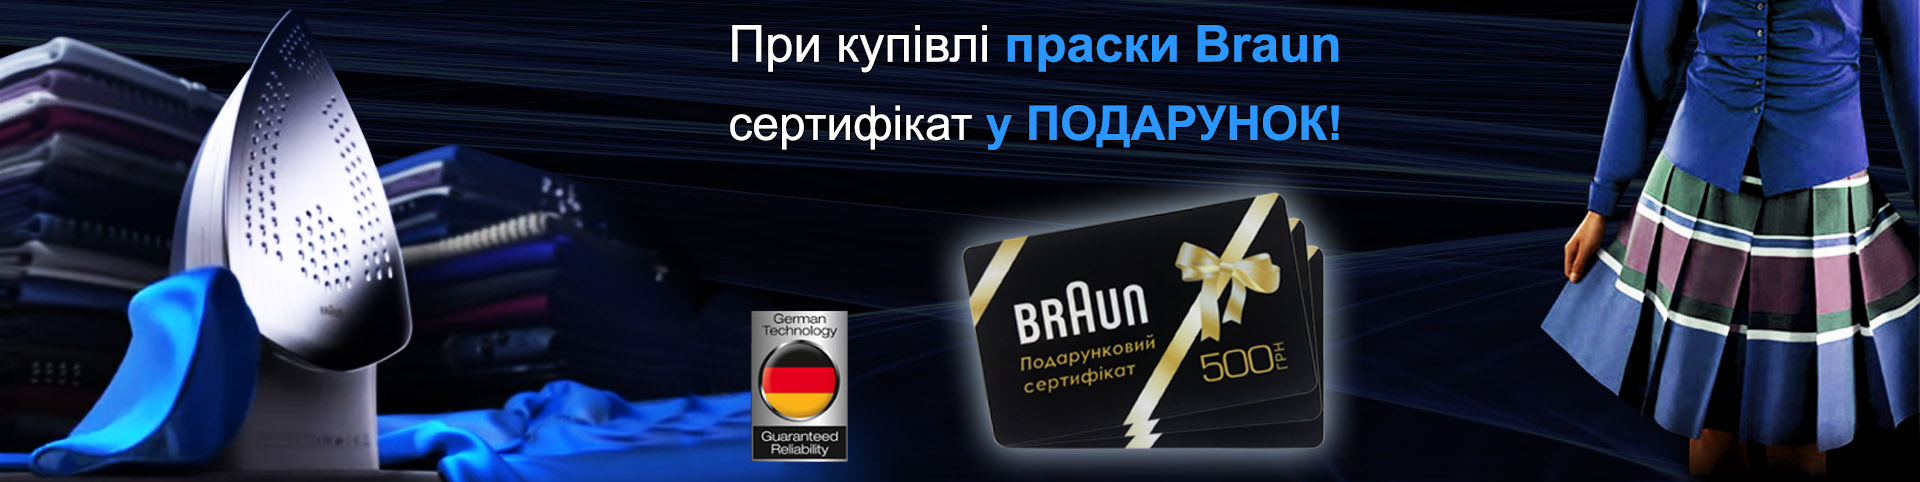 Купуючи праску Braun, у подарунок ви отримуєте сертифікат на 500 грн